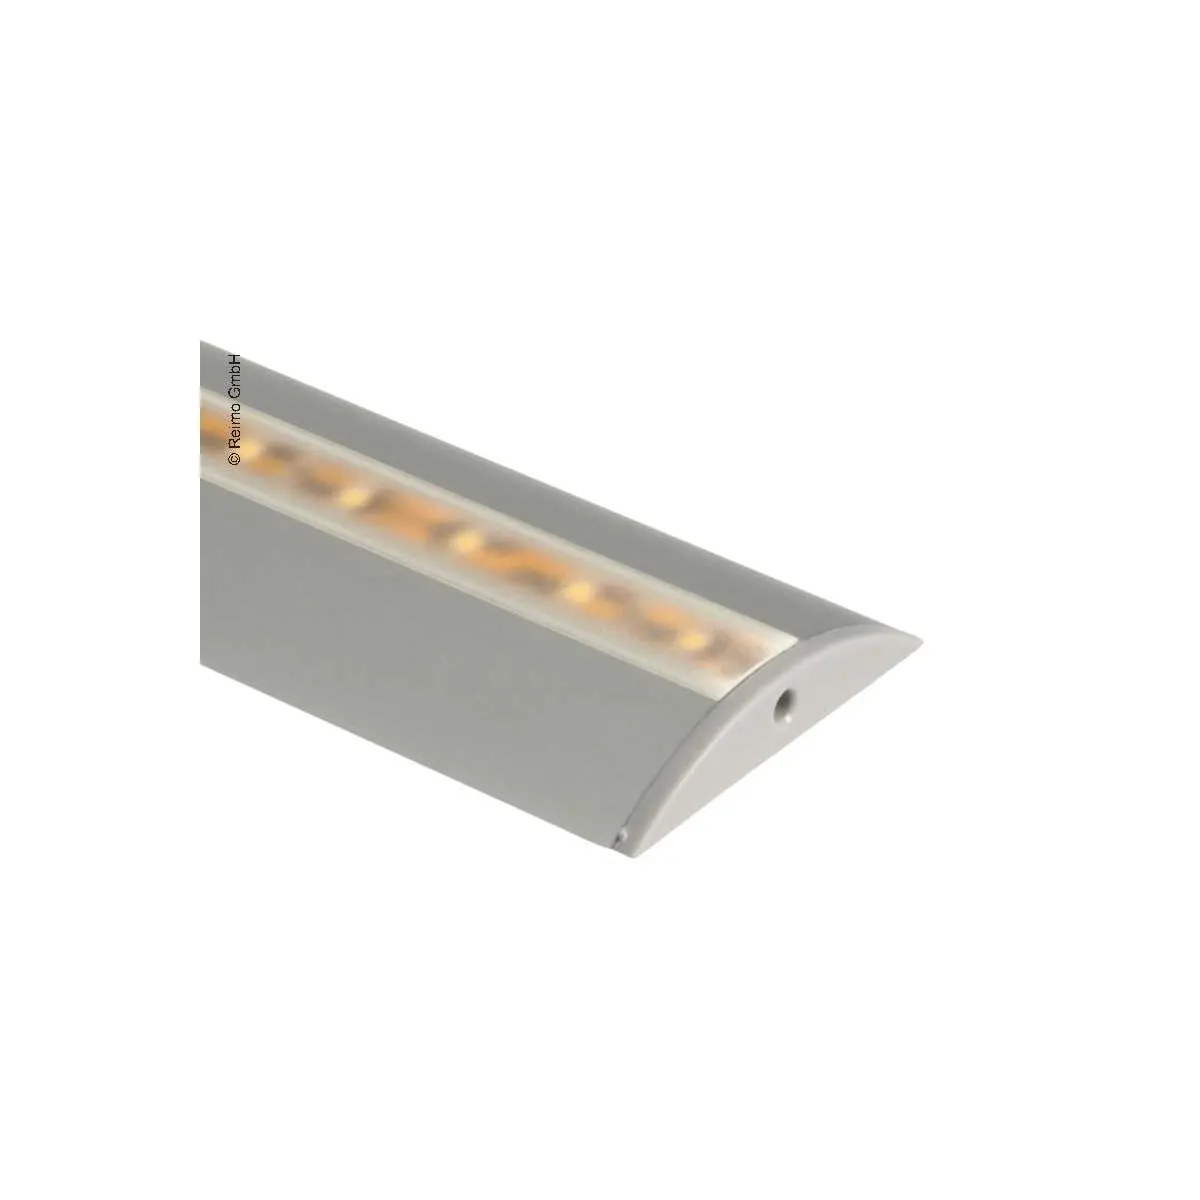 Karbeszt alumínium profil LED szalagokhoz, hossza 1,5 m félkör